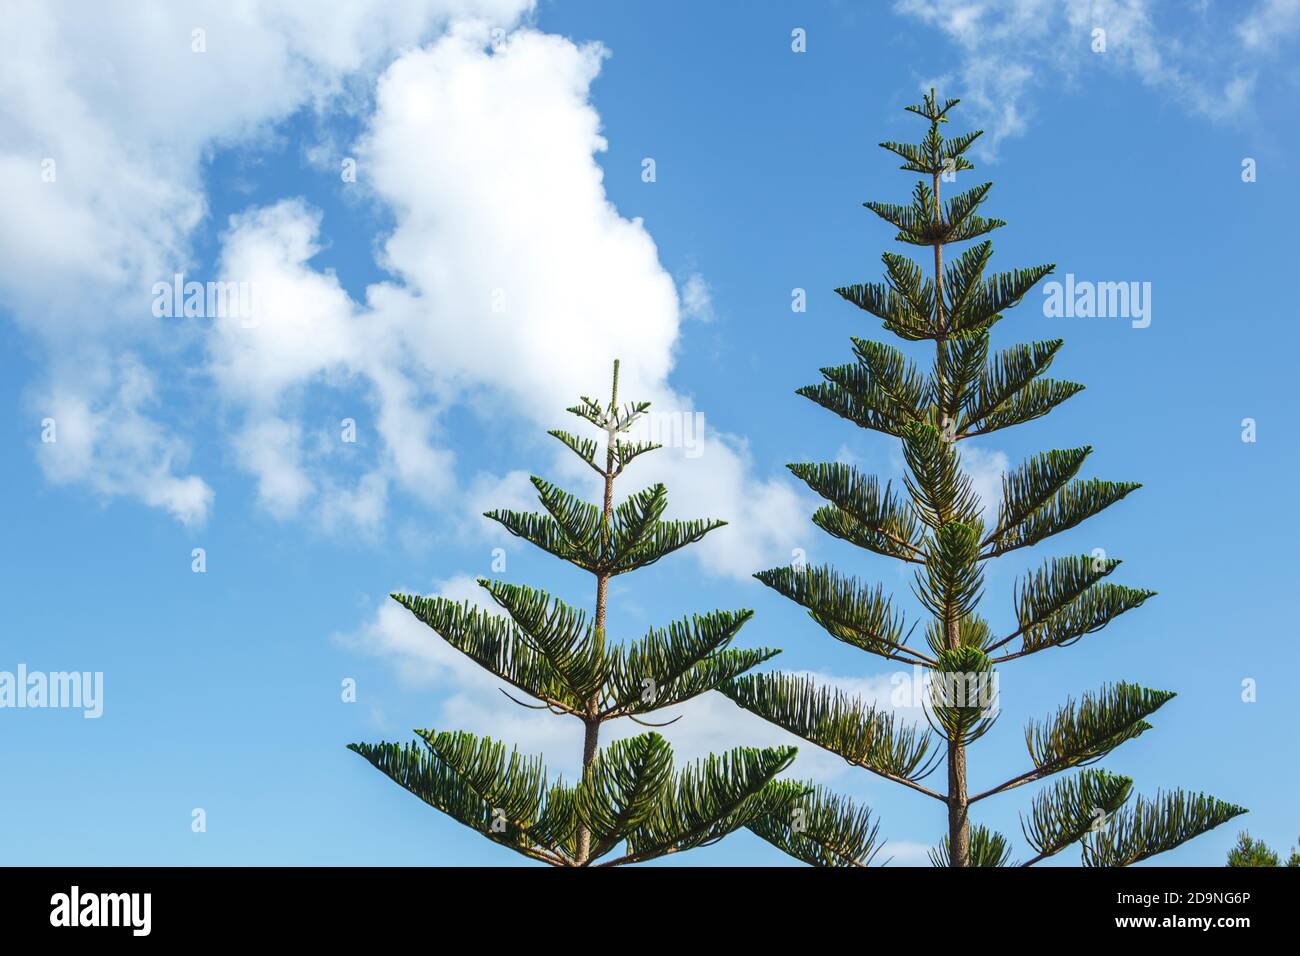 Araucaria pousse contre un ciel nuageux sur un Soleil clair jour Banque D'Images